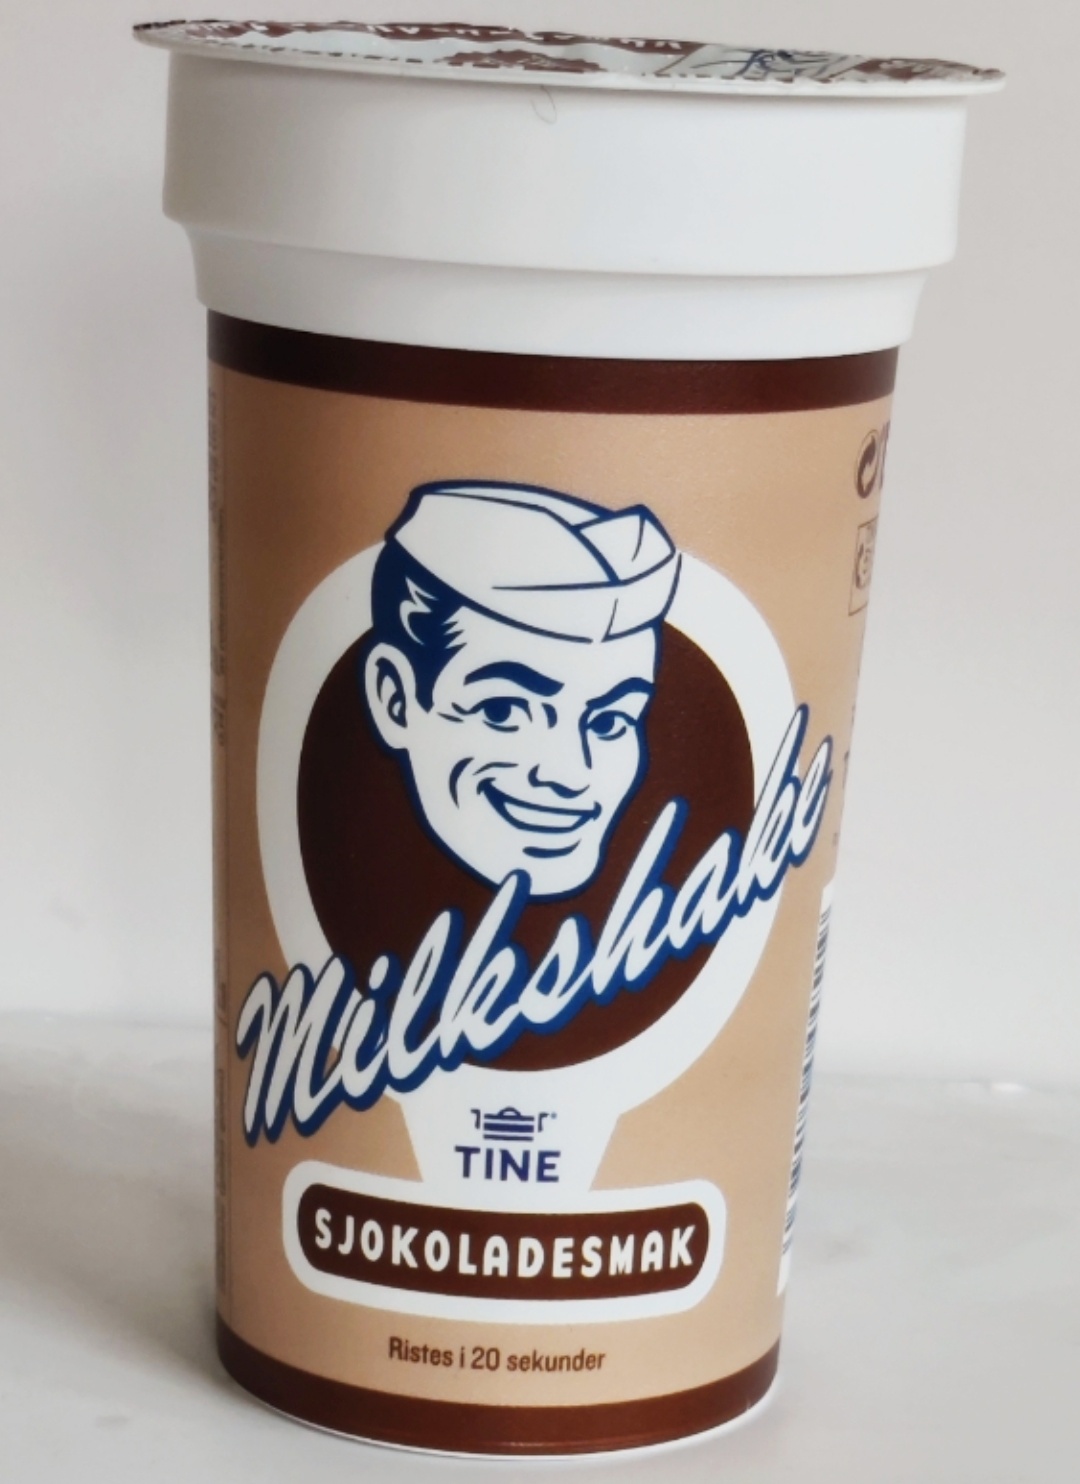 Milkshake/ annet sjokodrikk